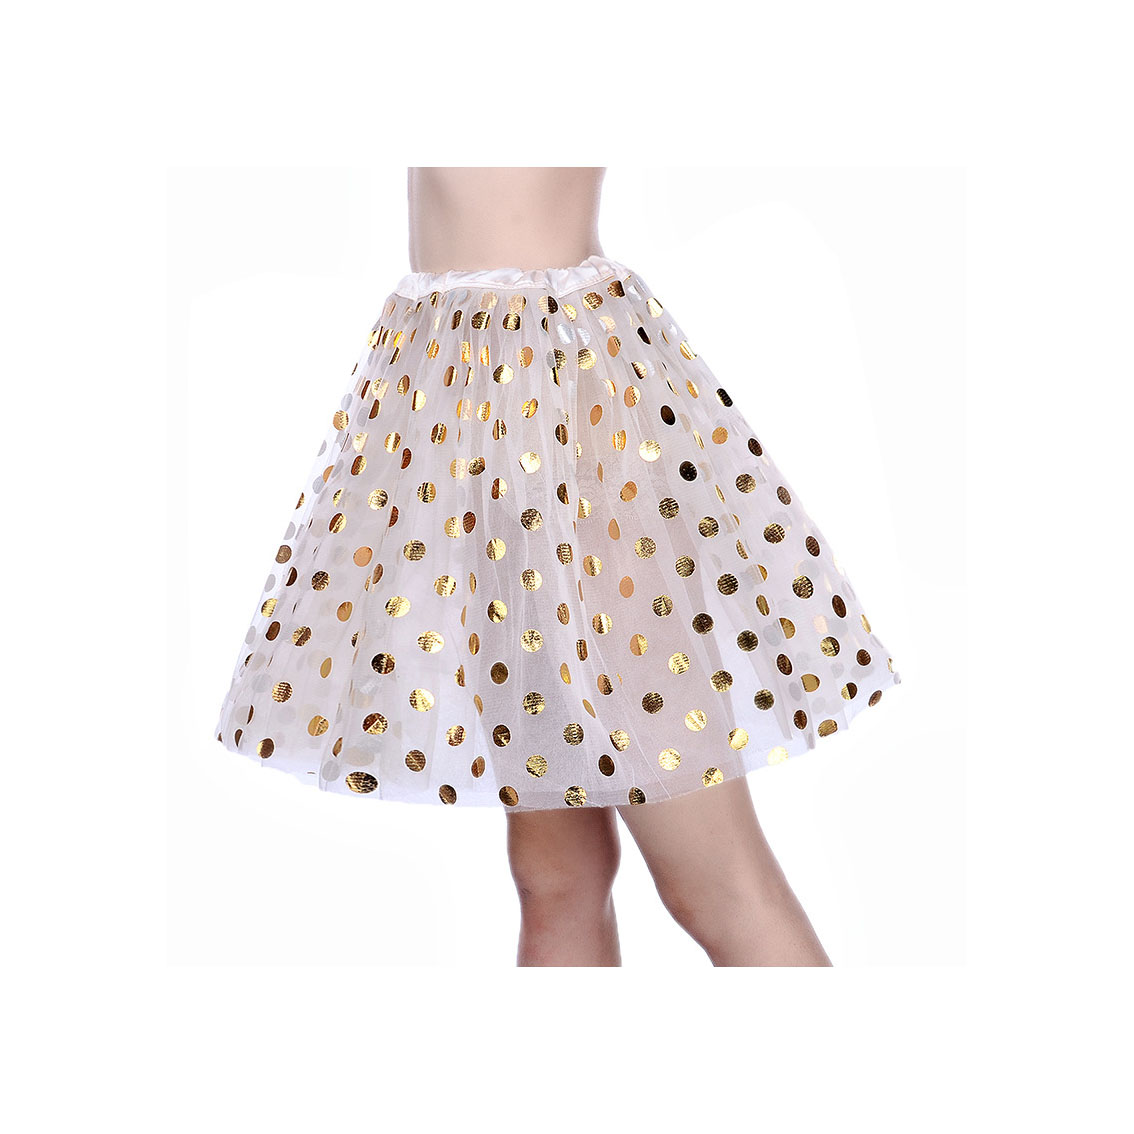 Adult Tutu Skirt Sequin Gilding Polka Dot 3 Layers Party Dance Ballet Pettiskirt Tulle Girl Mini Skirt off white+gold